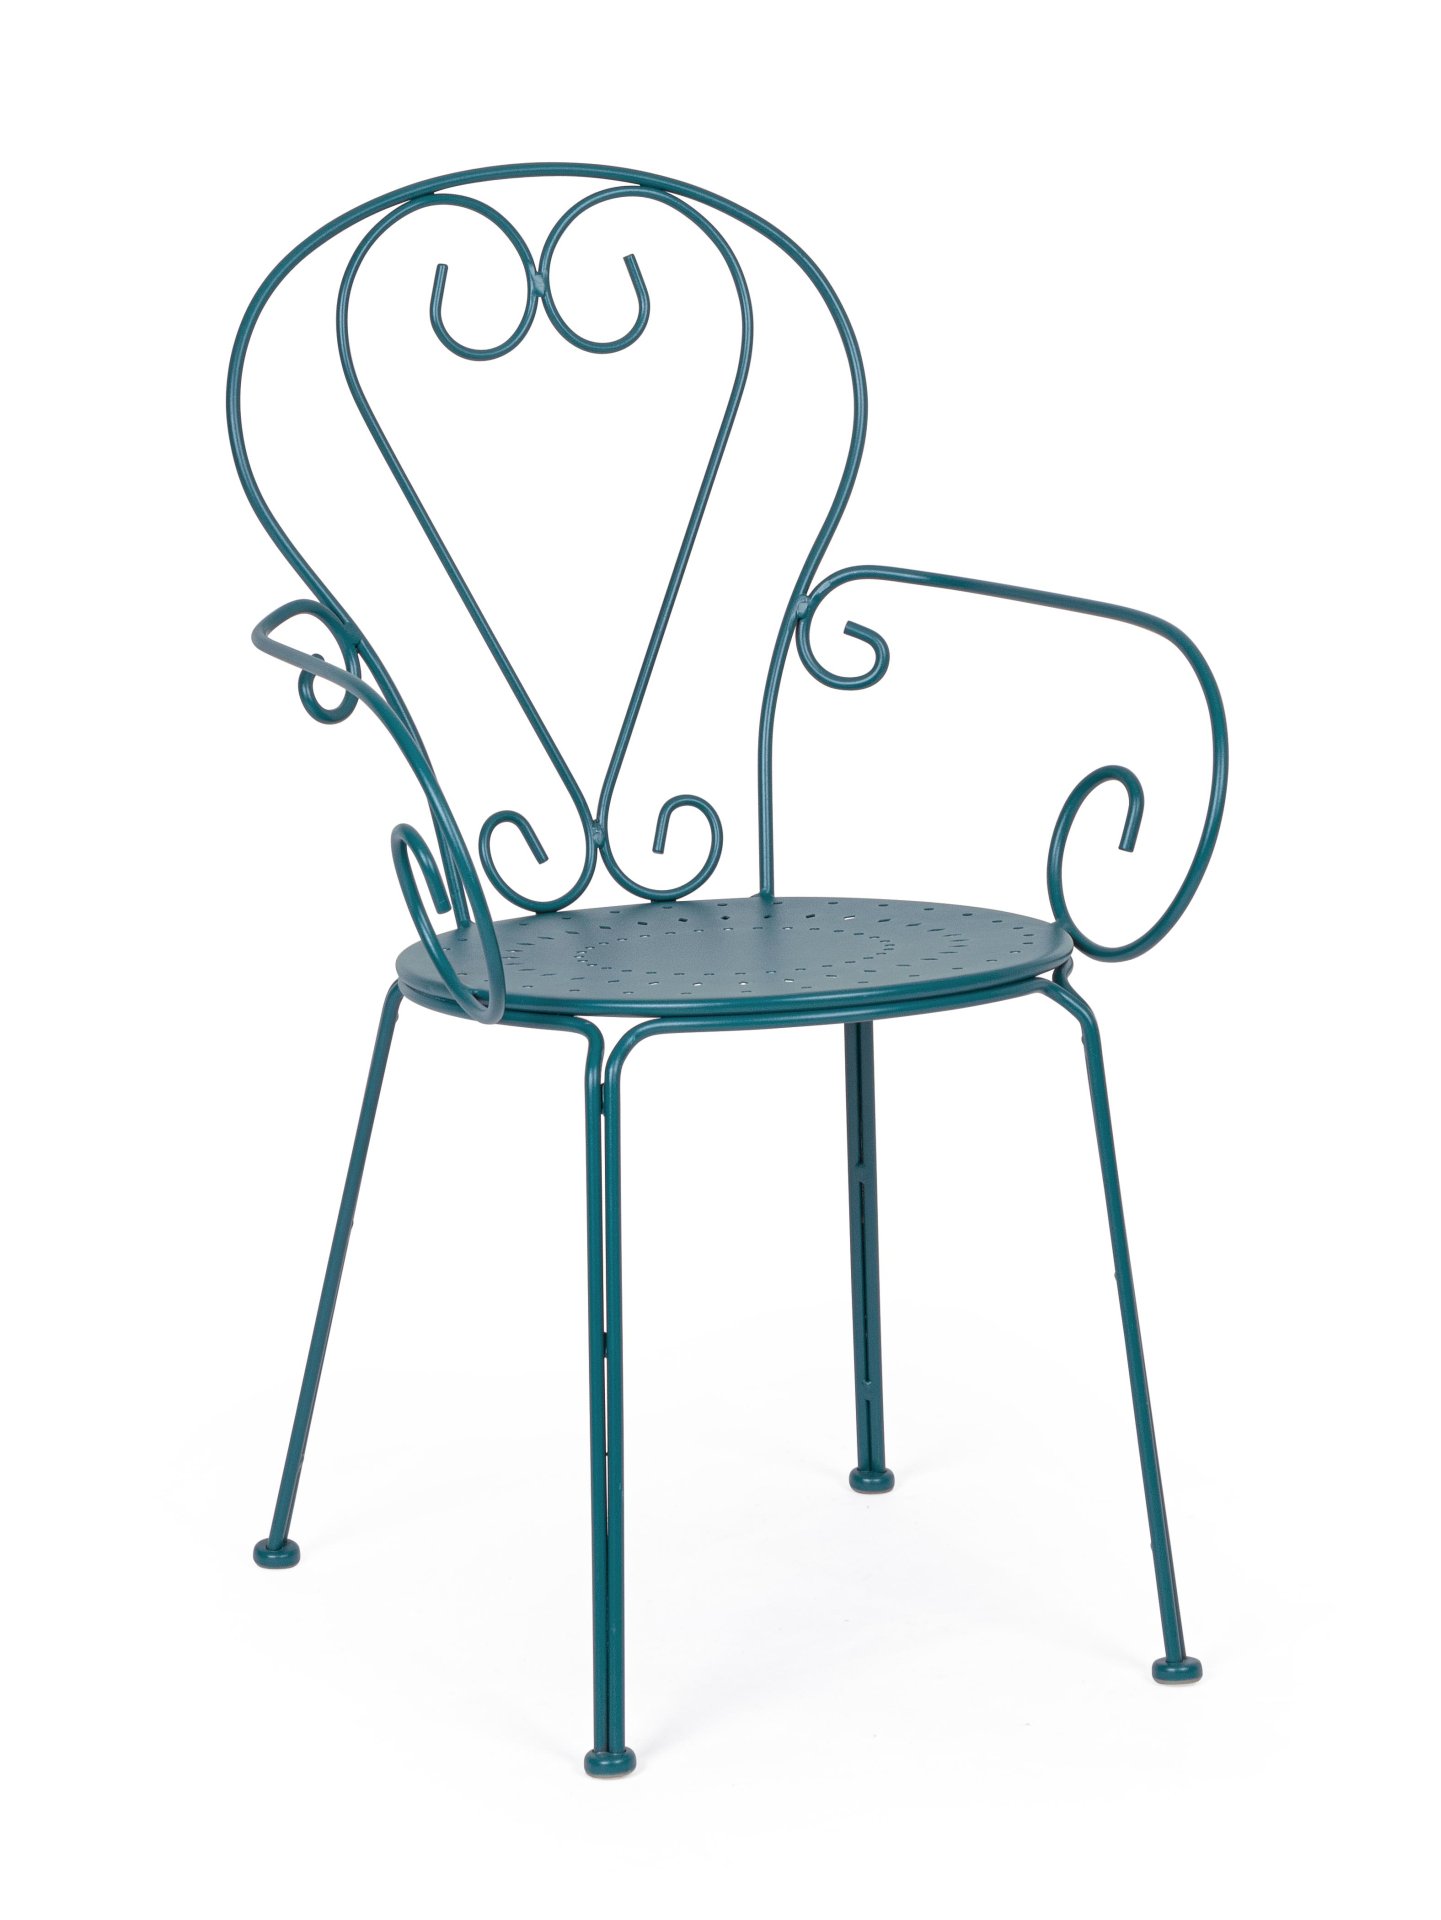 Der Gartenstuhl Etienne überzeugt mit seinem klassischen Design. Gefertigt wurde er aus Aluminium, welches einen blauen Farbton besitzen. Das Gestell ist aus Aluminium und hat eine blauen Farbe. Der Stuhl verfügt über eine Sitzhöhe von 43 cm und ist für d